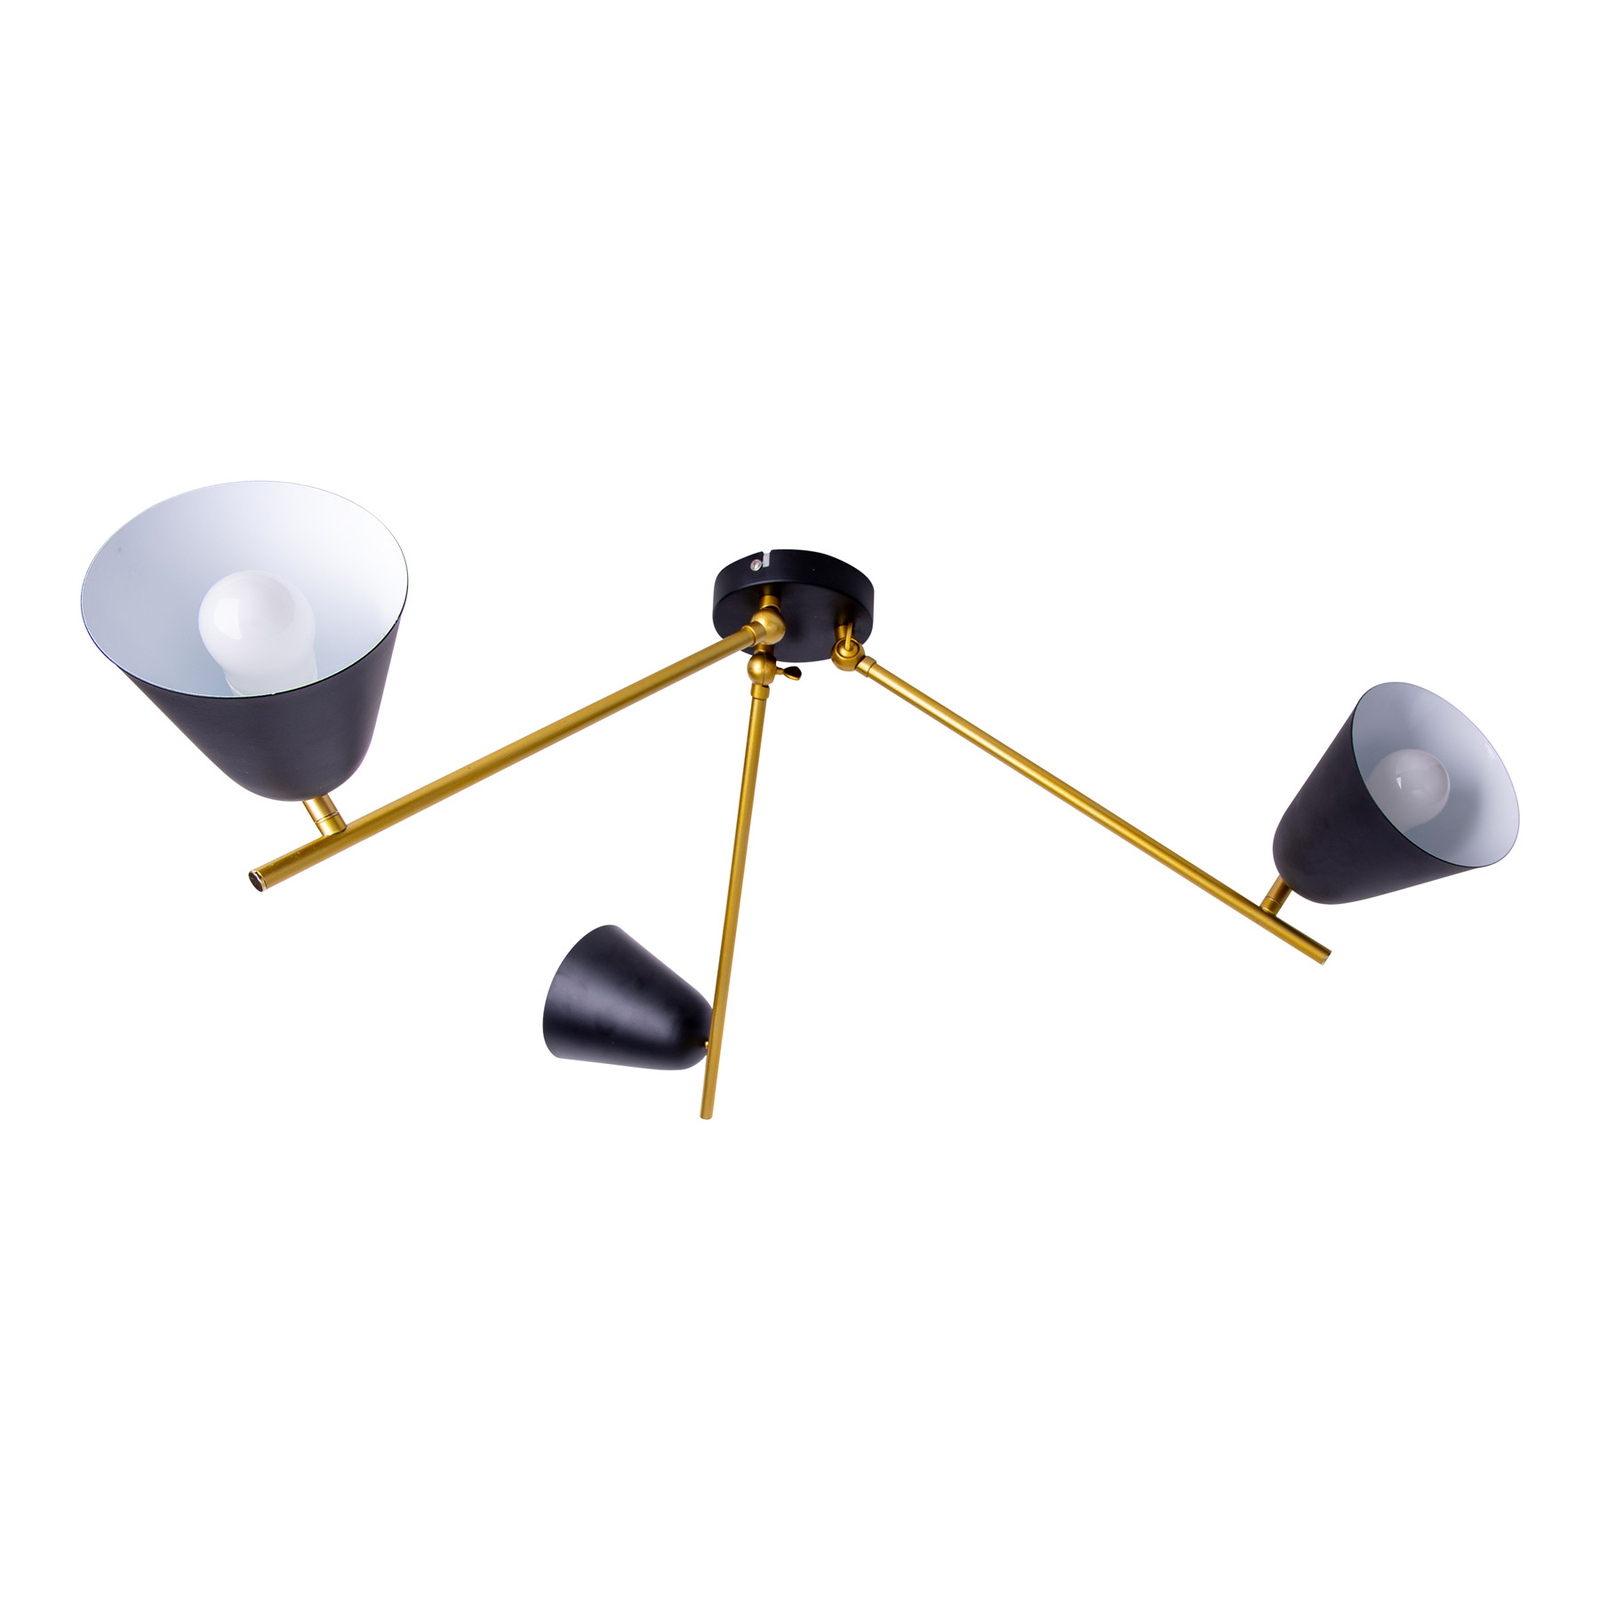 Taklampe Triton, svart og gull, 3 lyskilder